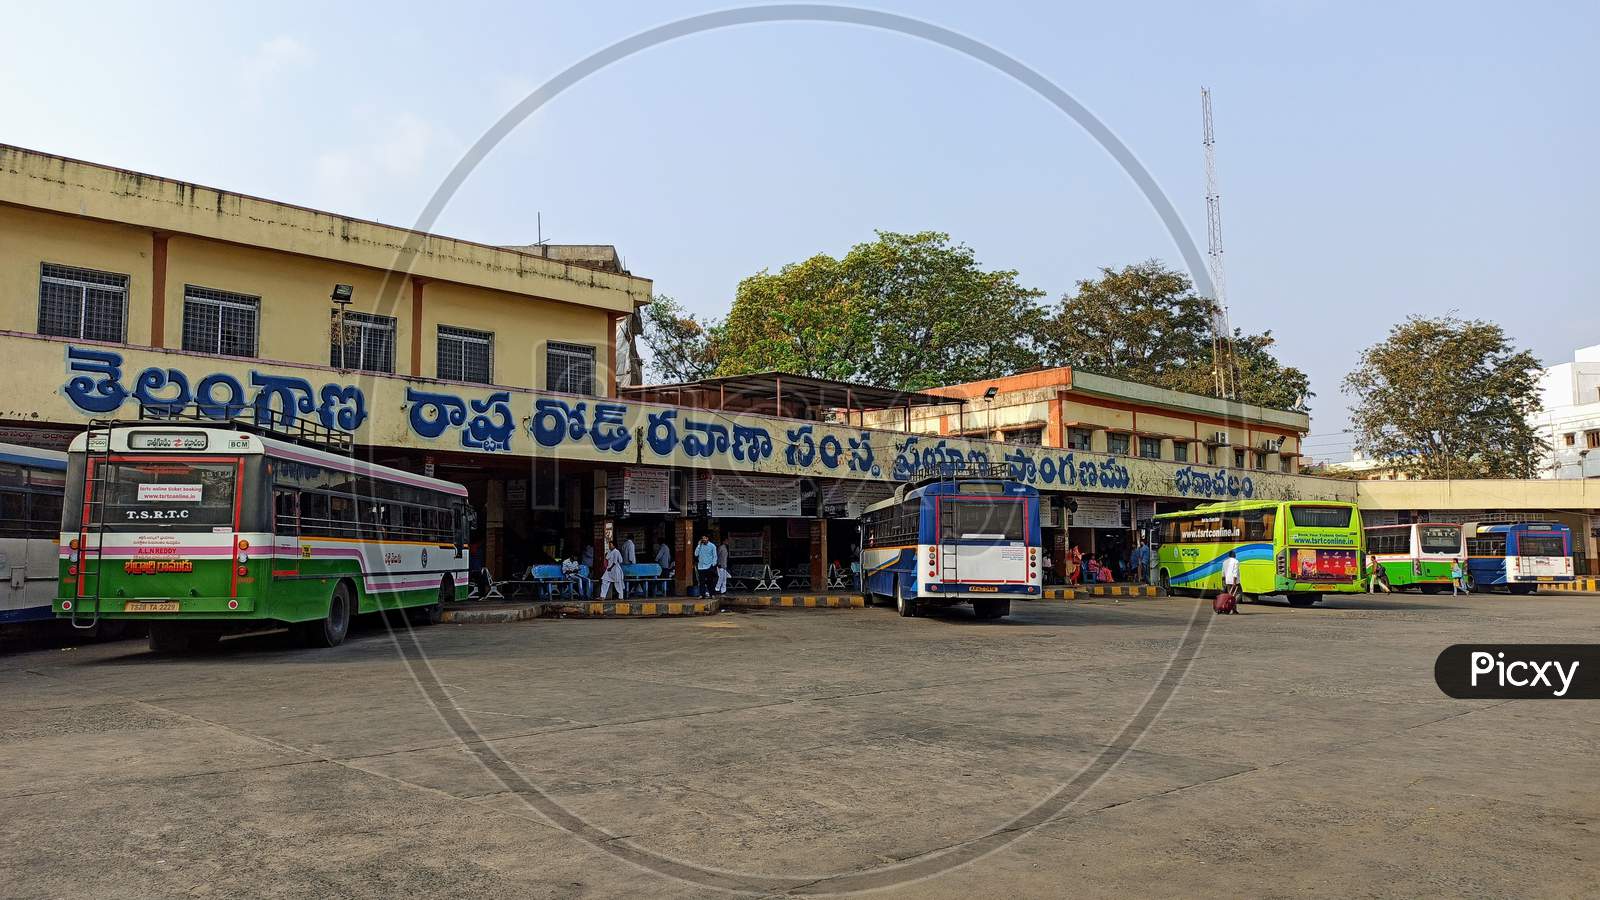 TSRTC Busstation Badrachalam Telangana India